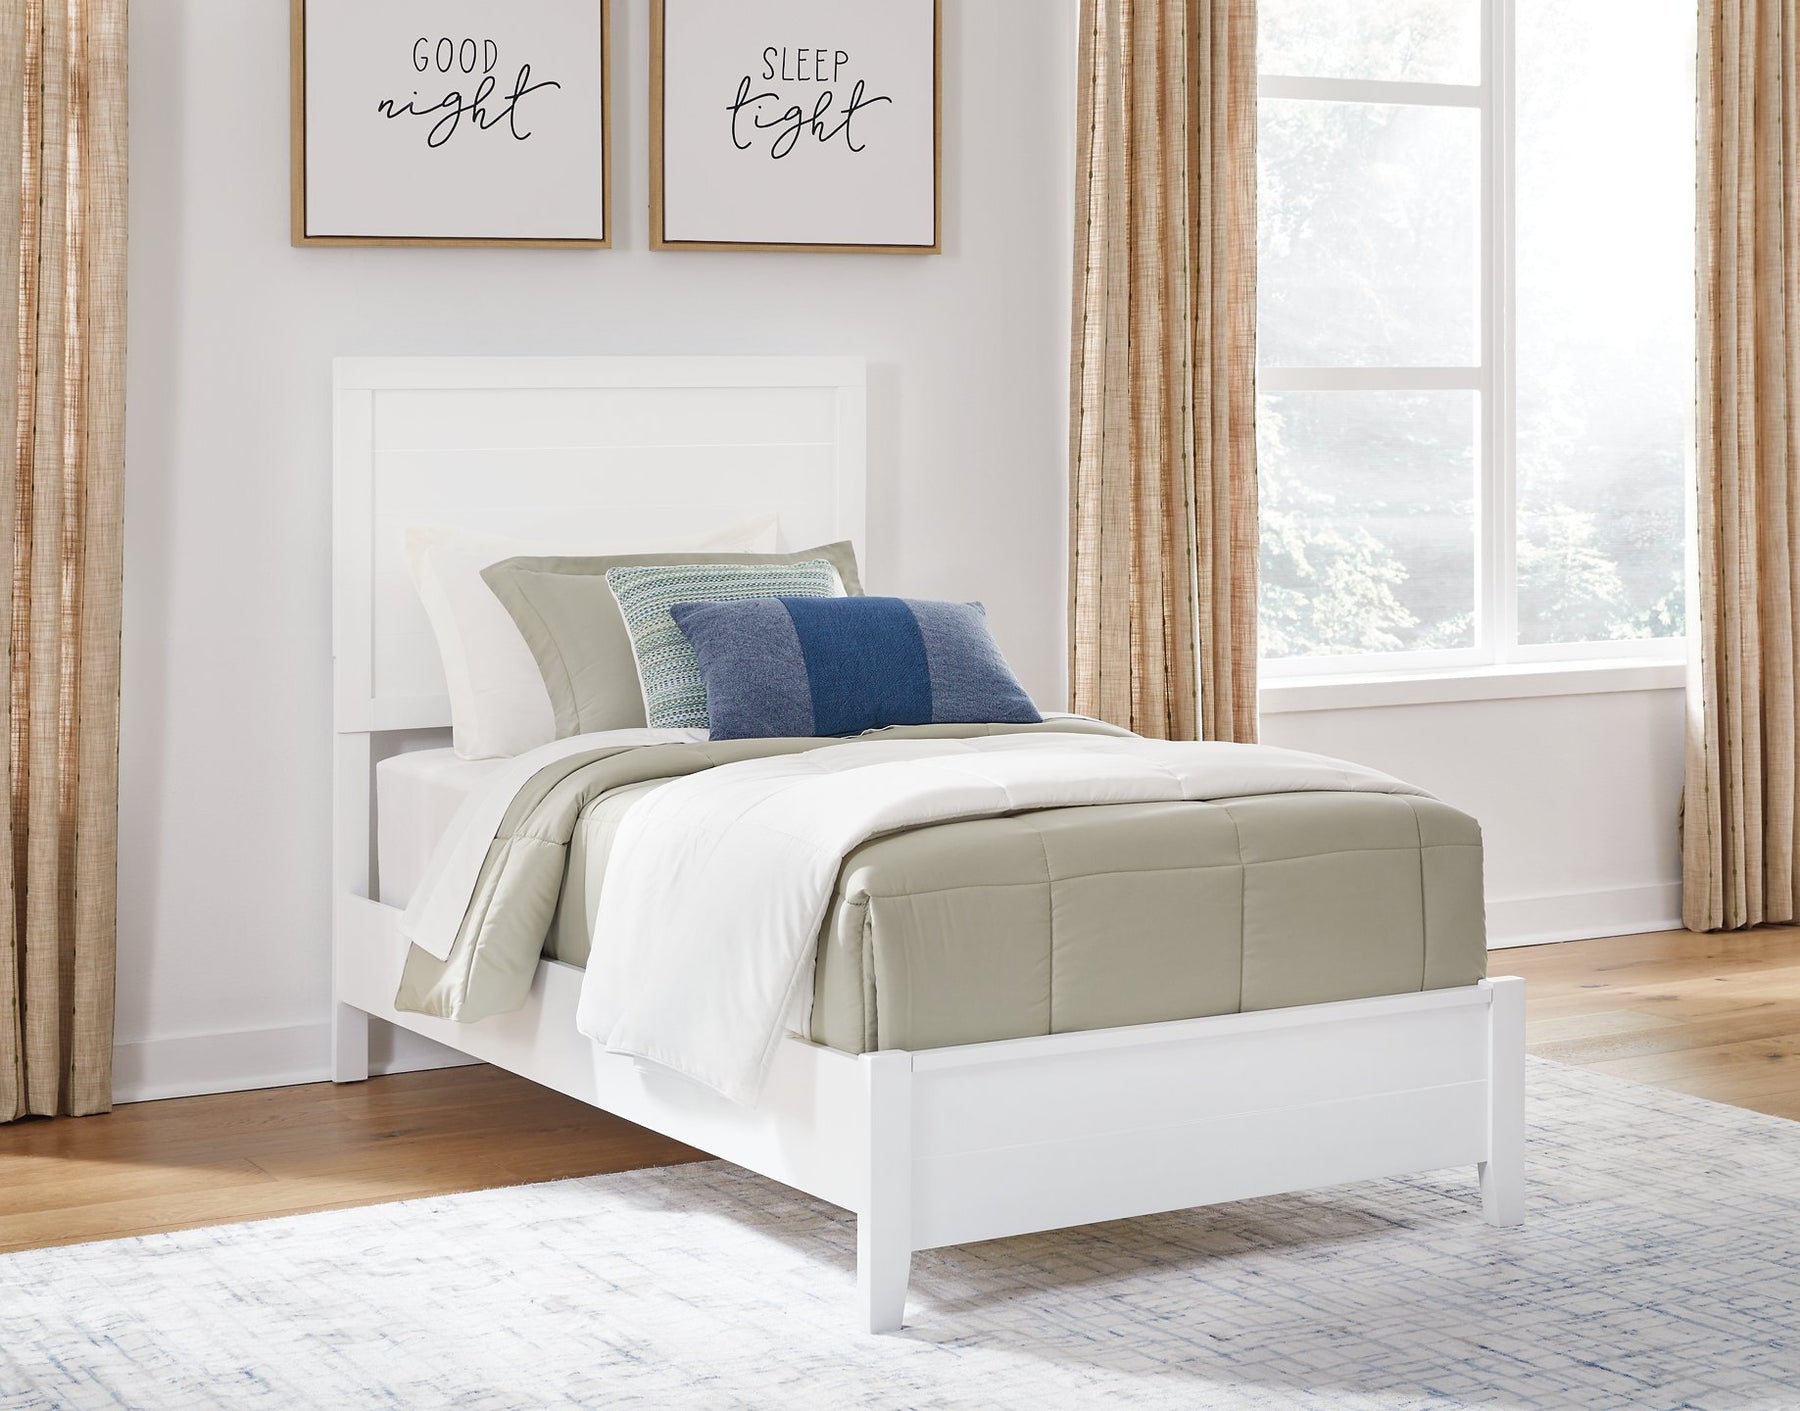 Binterglen Bed - Half Price Furniture